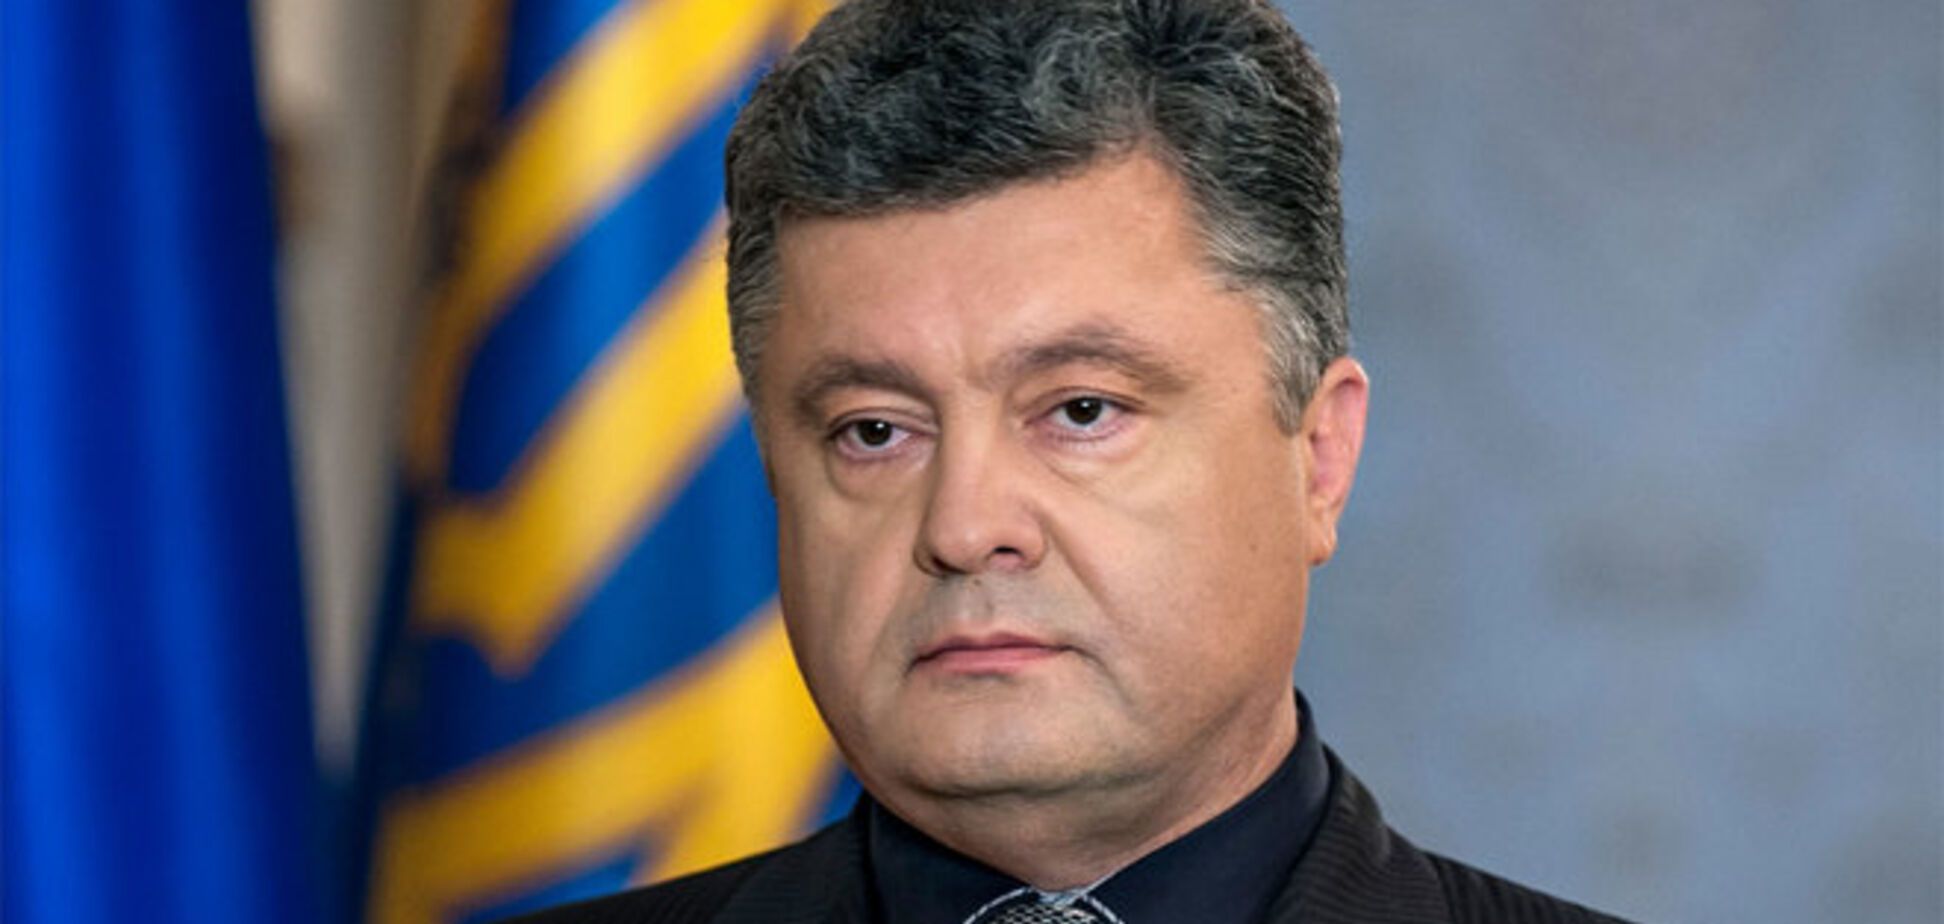 Порошенко назвал условие наступления мира на Донбассе через несколько недель